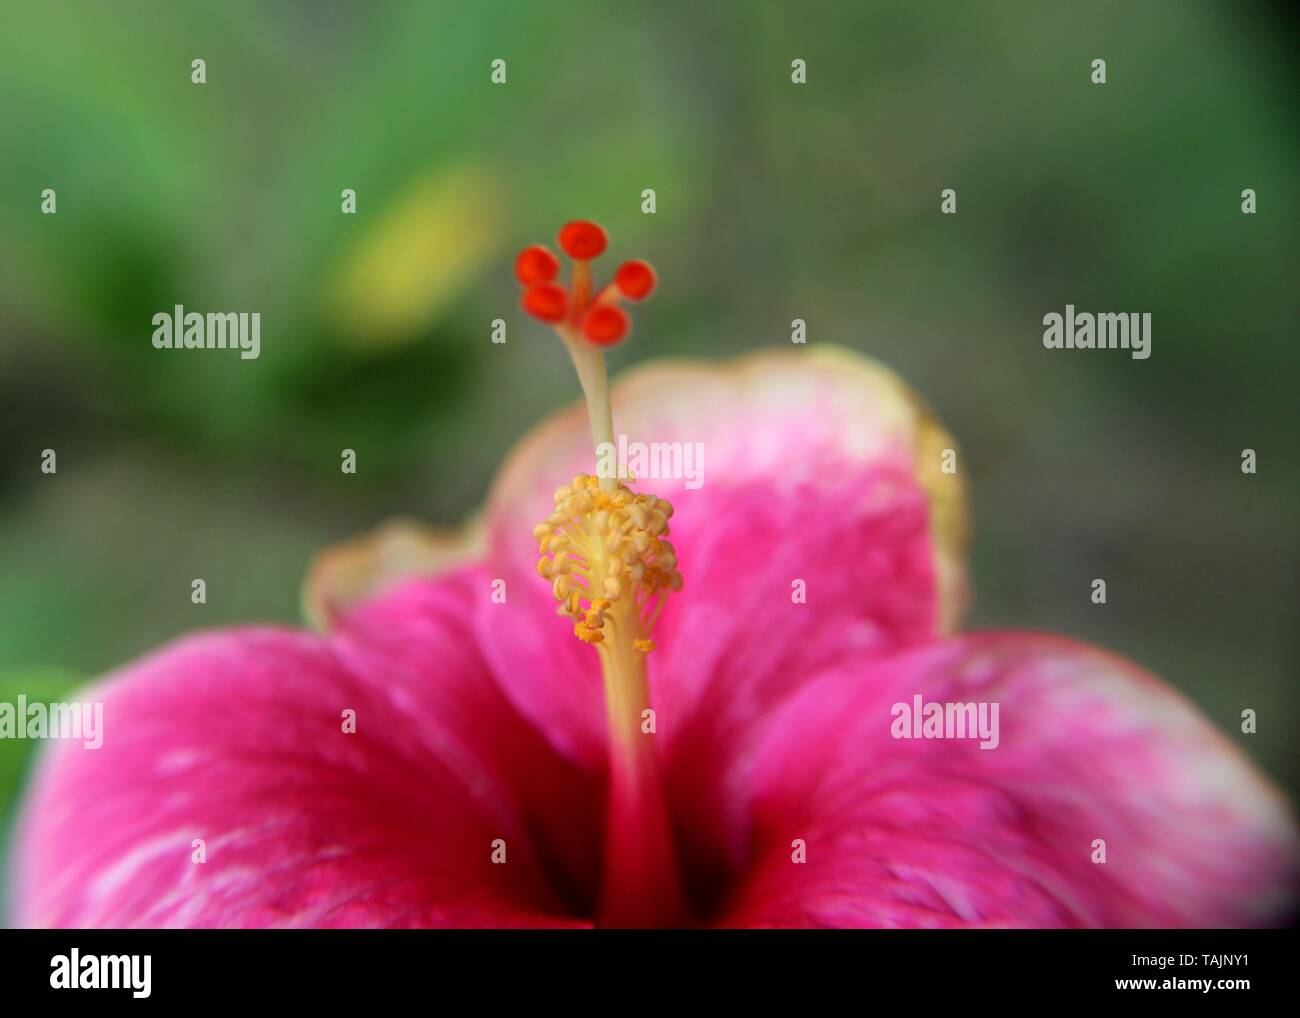 Makro - Nahaufnahme der schönen rosa Farbe Schuhblume - Rosenmalbe - Hibiskusblüte in einem Haus gesehen Garten in Sri Lanka Stockfoto